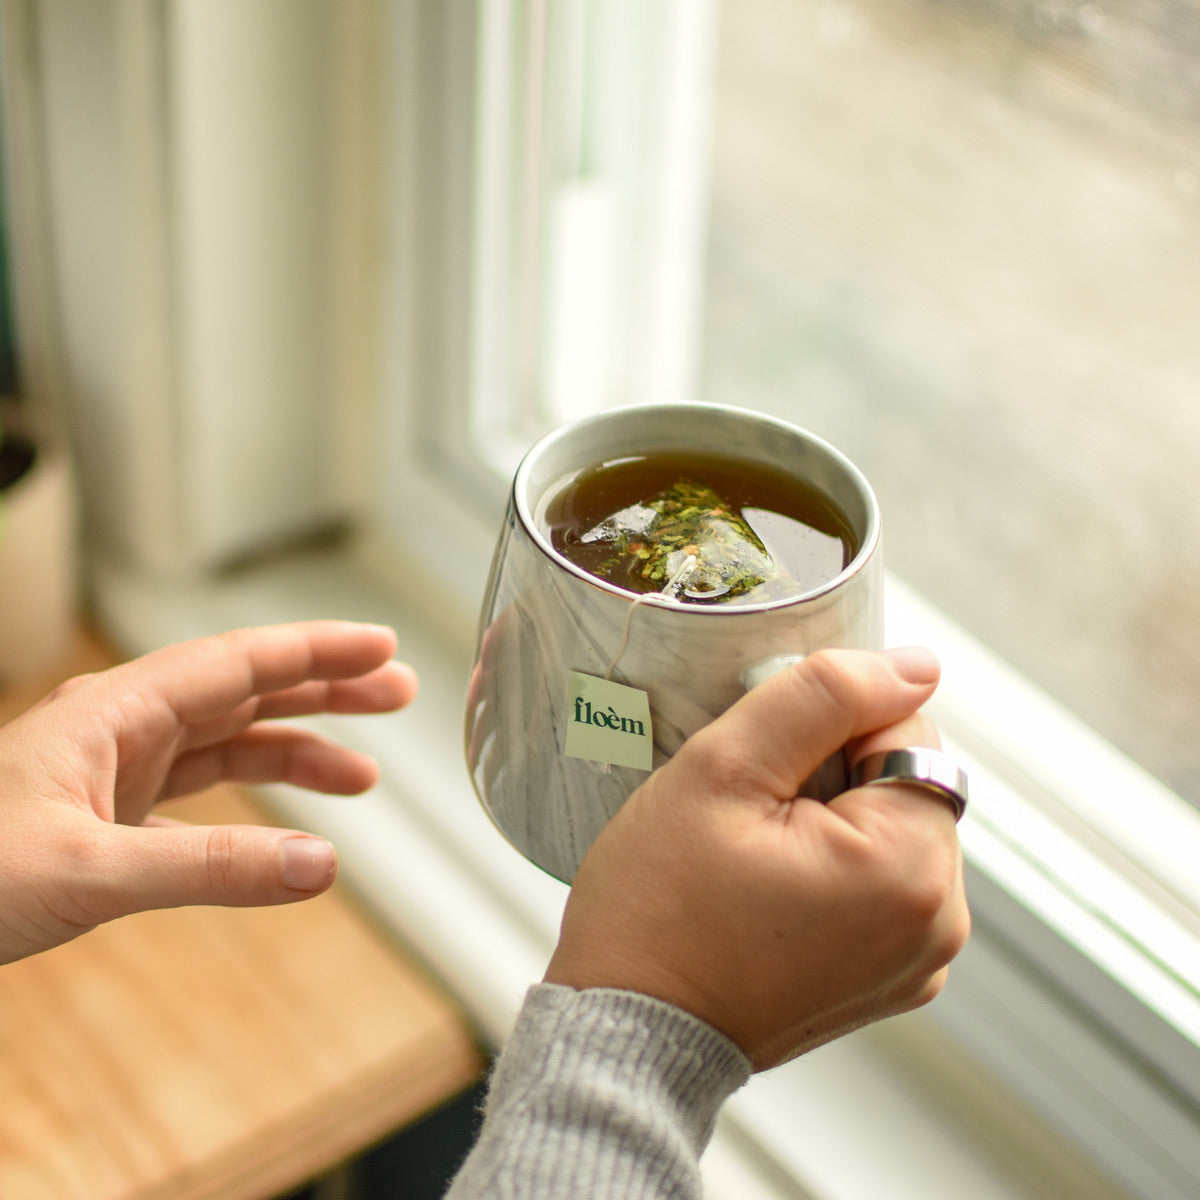 Sachet de thé Floèm dans une tasse devant une fenêtre